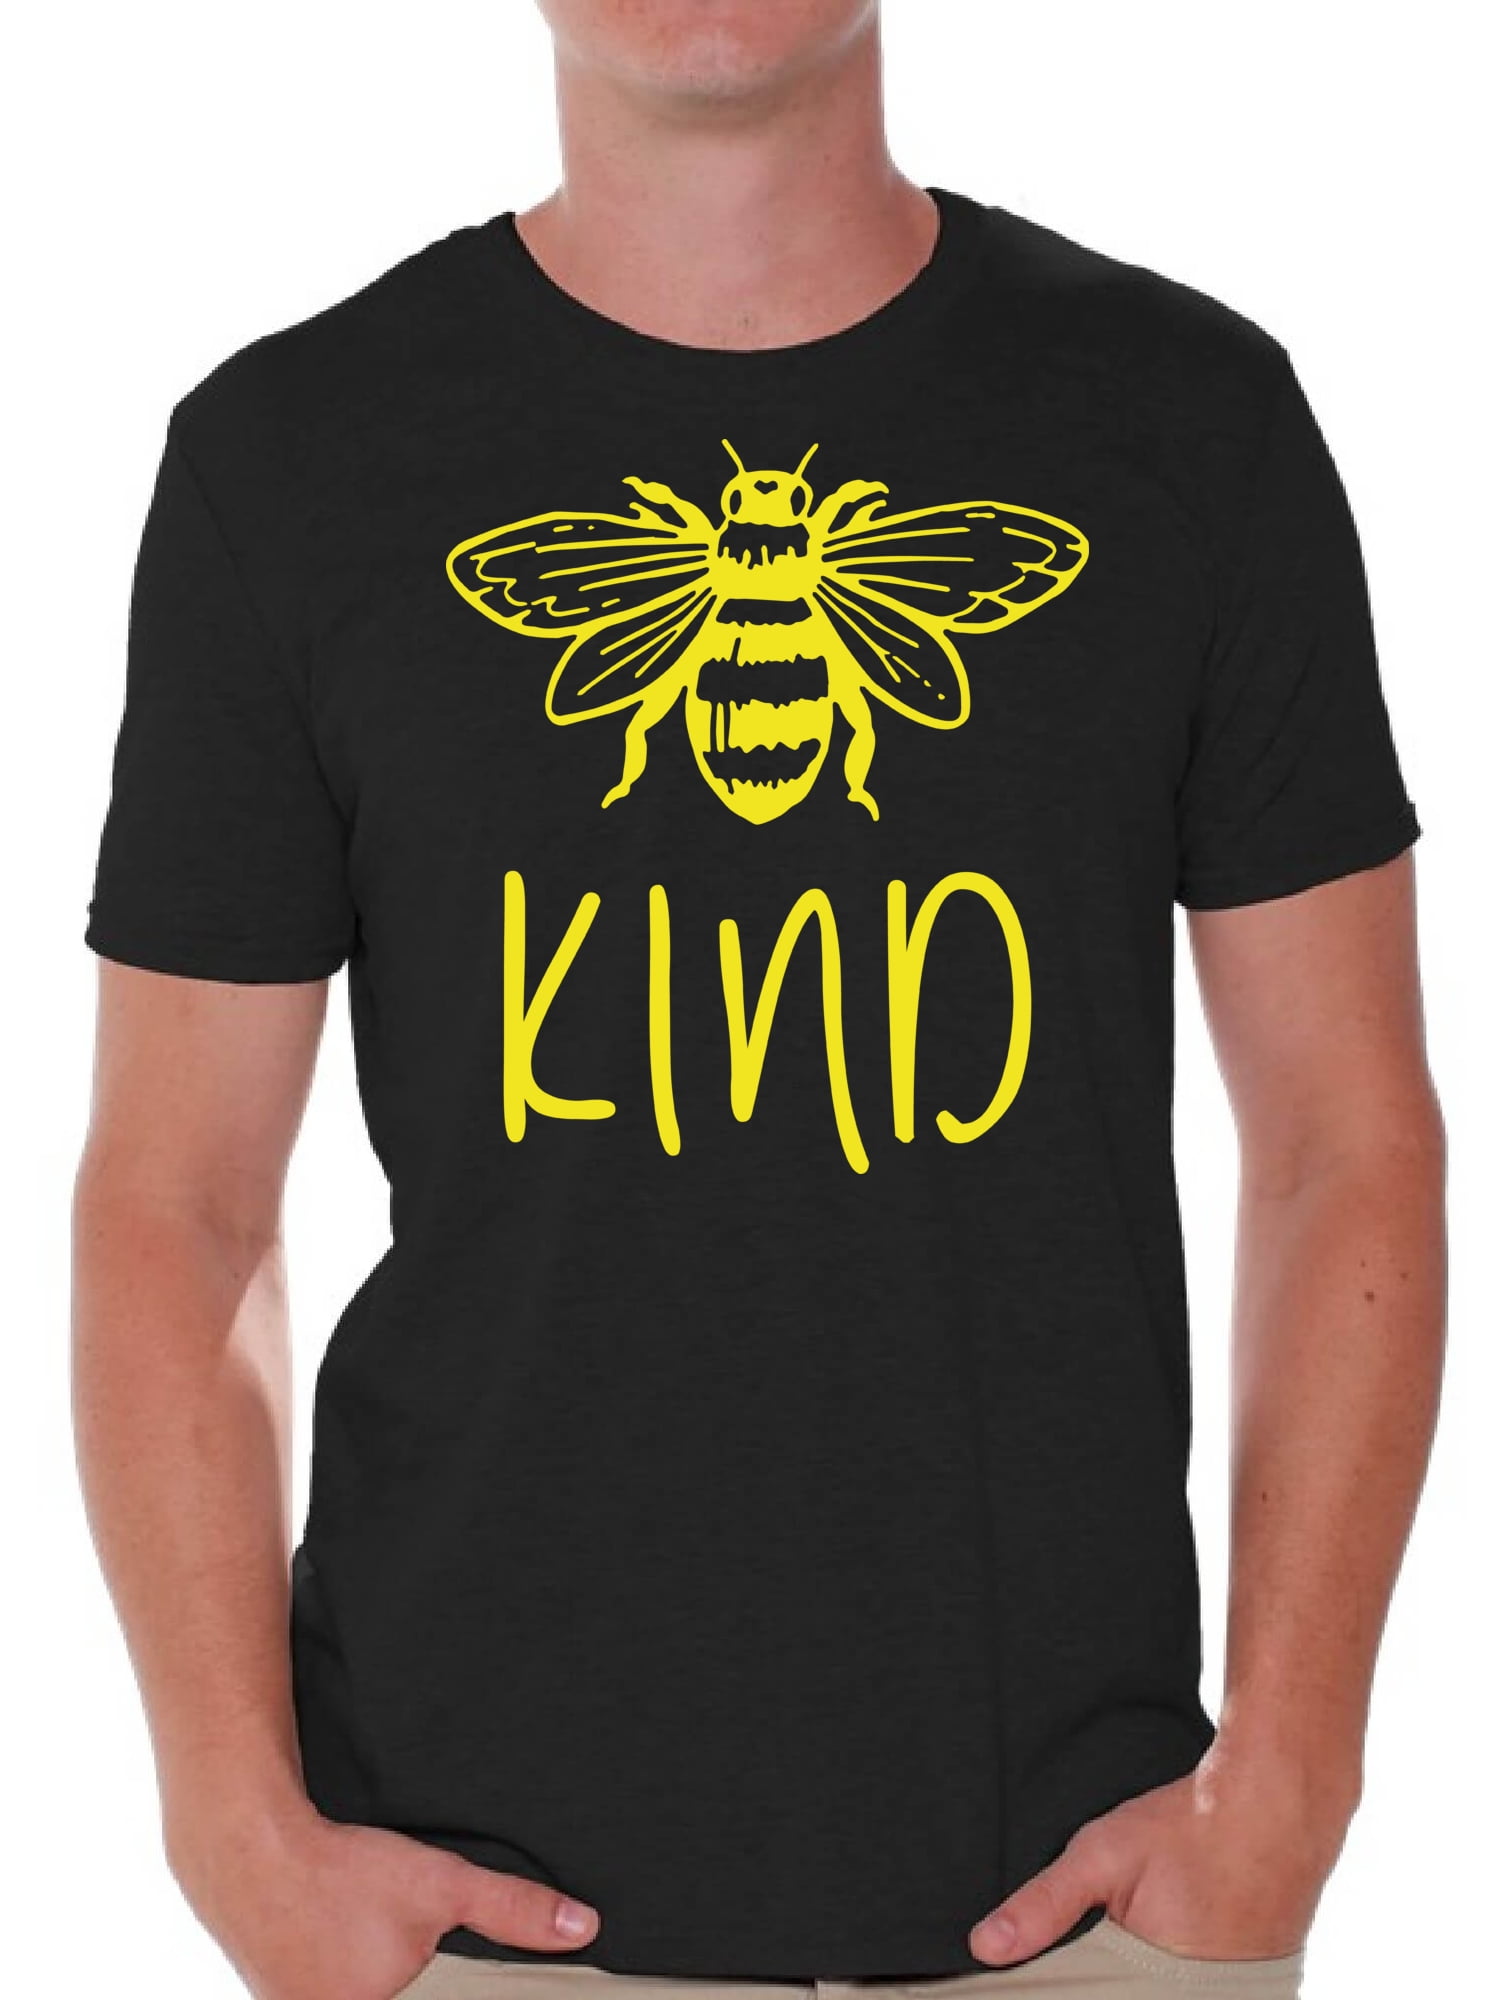 Be Nice Positive Quote Bee Happy Shirt Motivational Shirt Be Happy Shirt Inspirational Shirt Honey Bee Kind Shirt Queen Bee Shirt